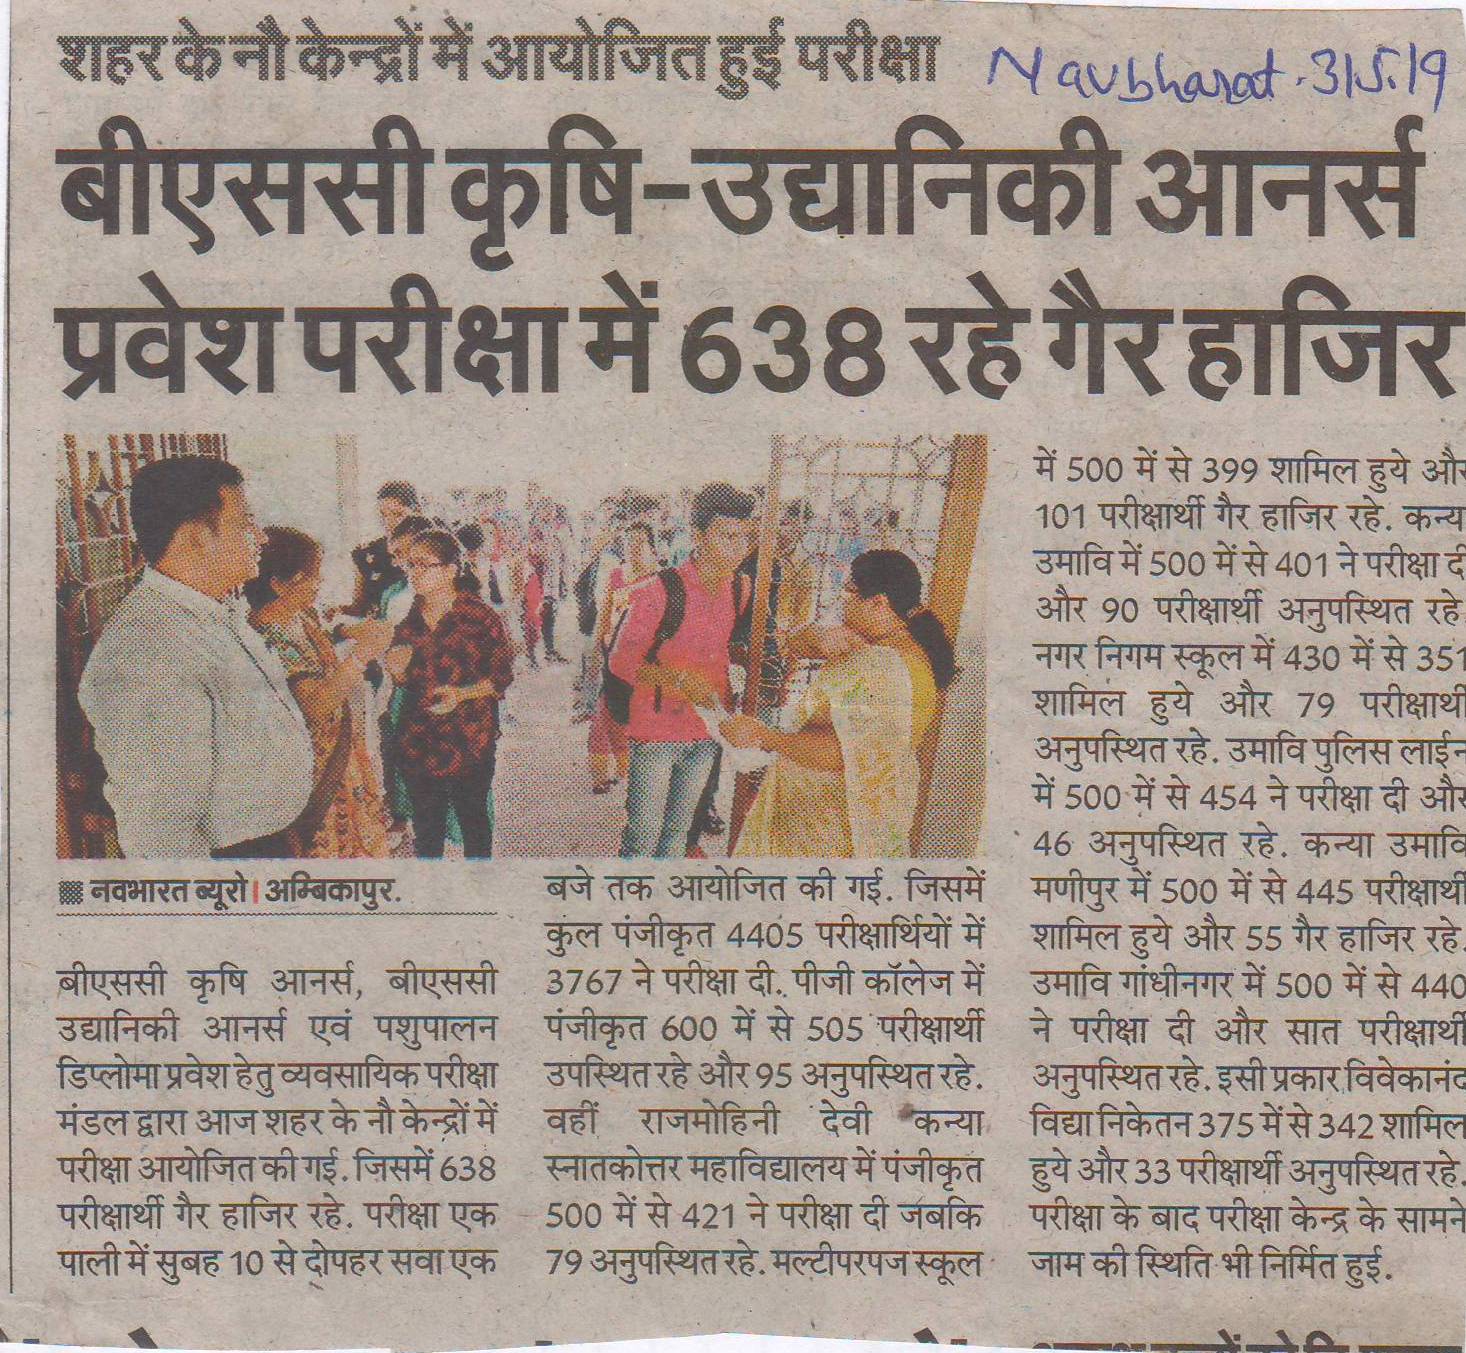 शहर के नौ केंद्रों में आयोजित हुयी परीक्षा  NAVBHARAT- Govt Rajmohini Devi Girls PG College, Ambikapur